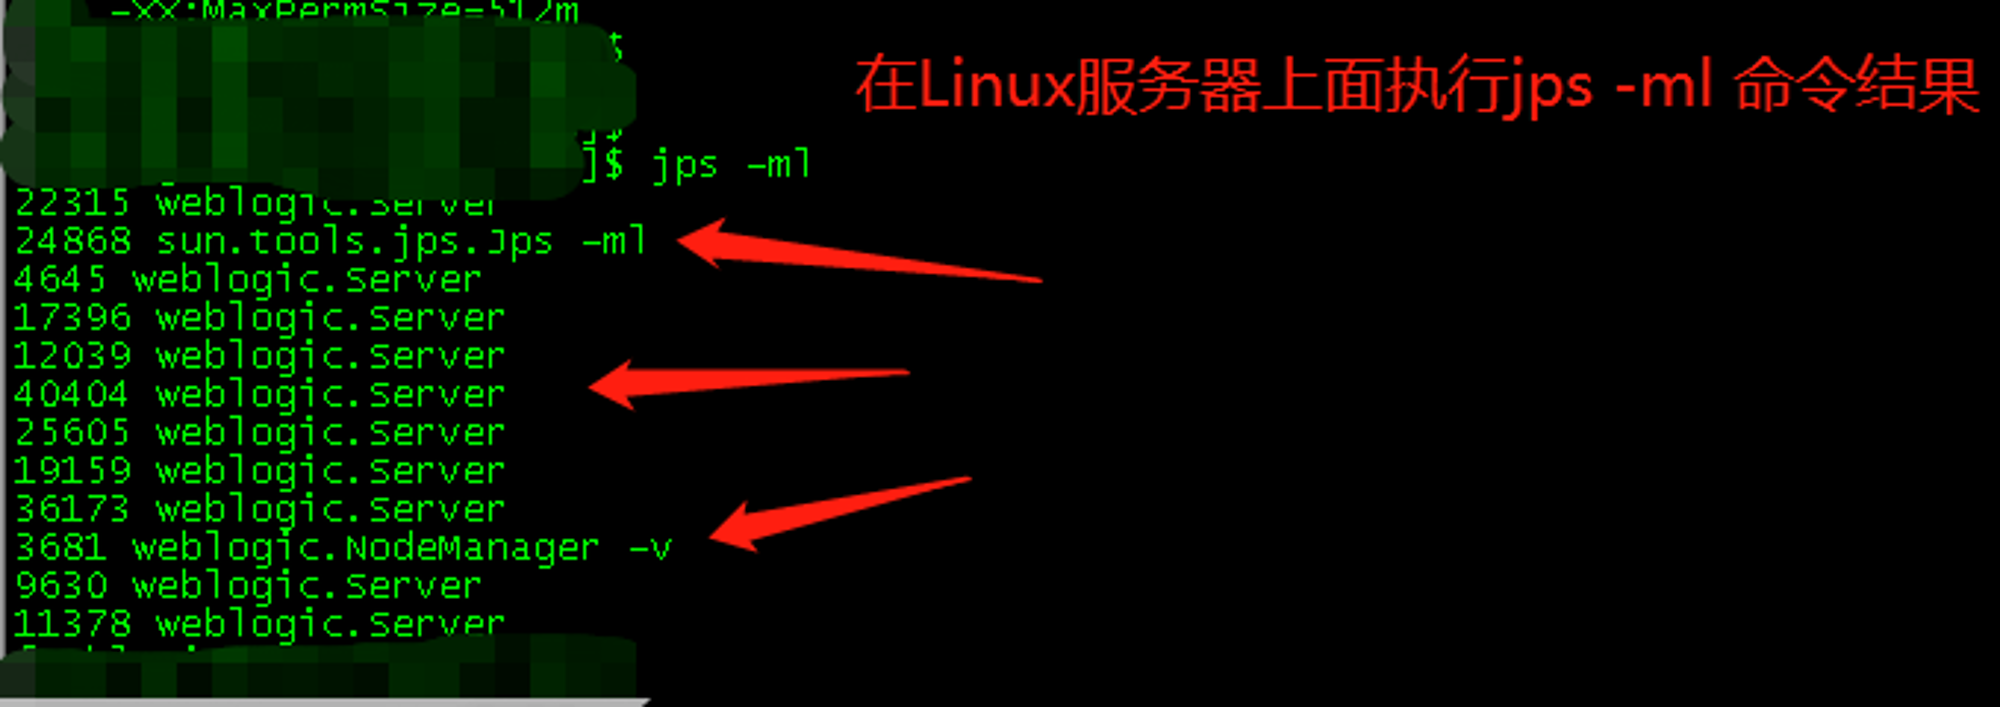 Linux服务器上面执行jps -ml命令结果